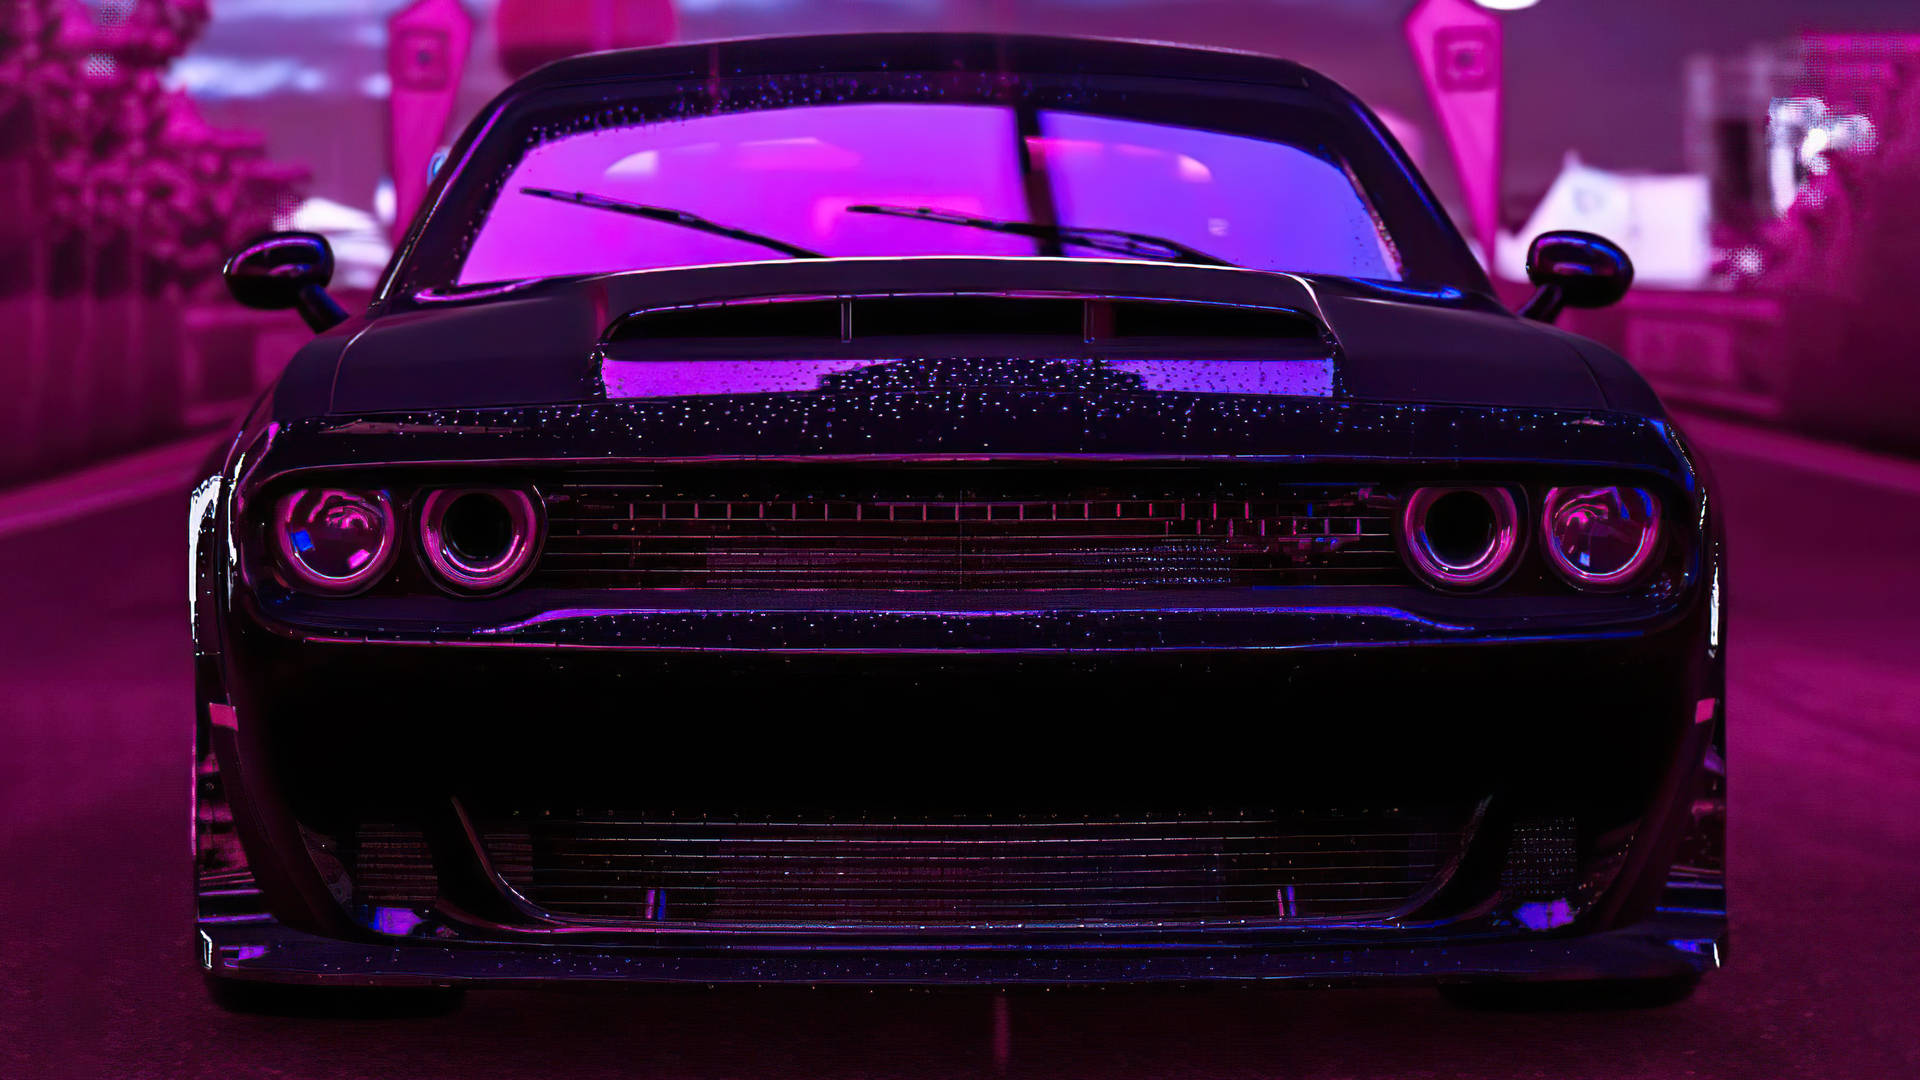 Top 111+ Dodge demon wallpaper 4k - Snkrsvalue.com